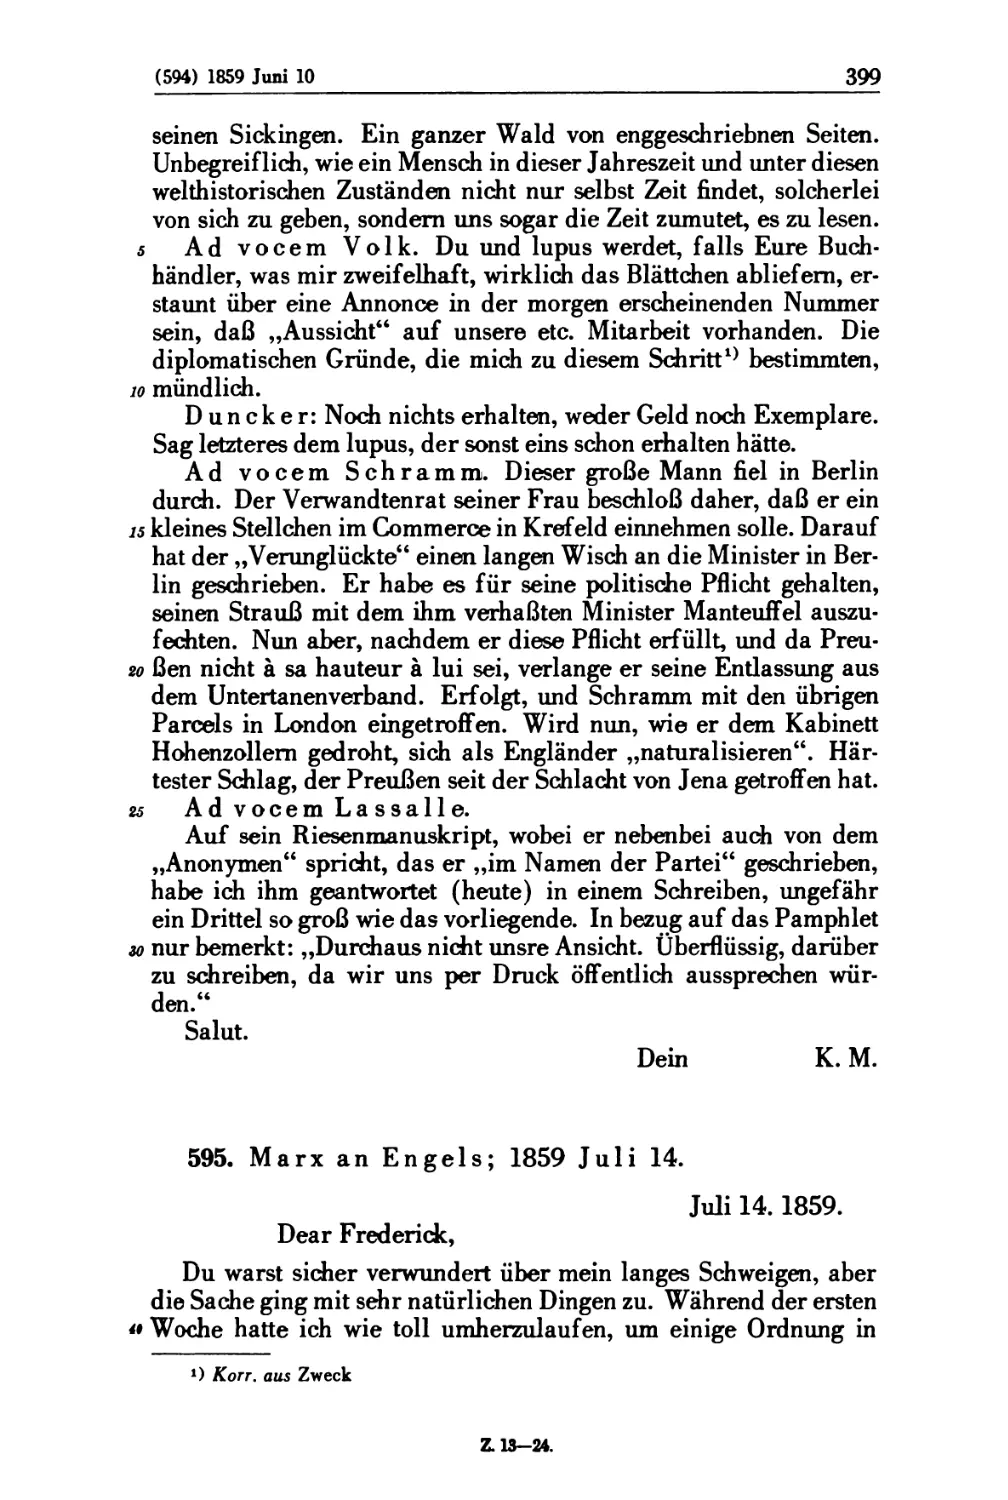 595. Marx an Engels; 1859 Juli 14